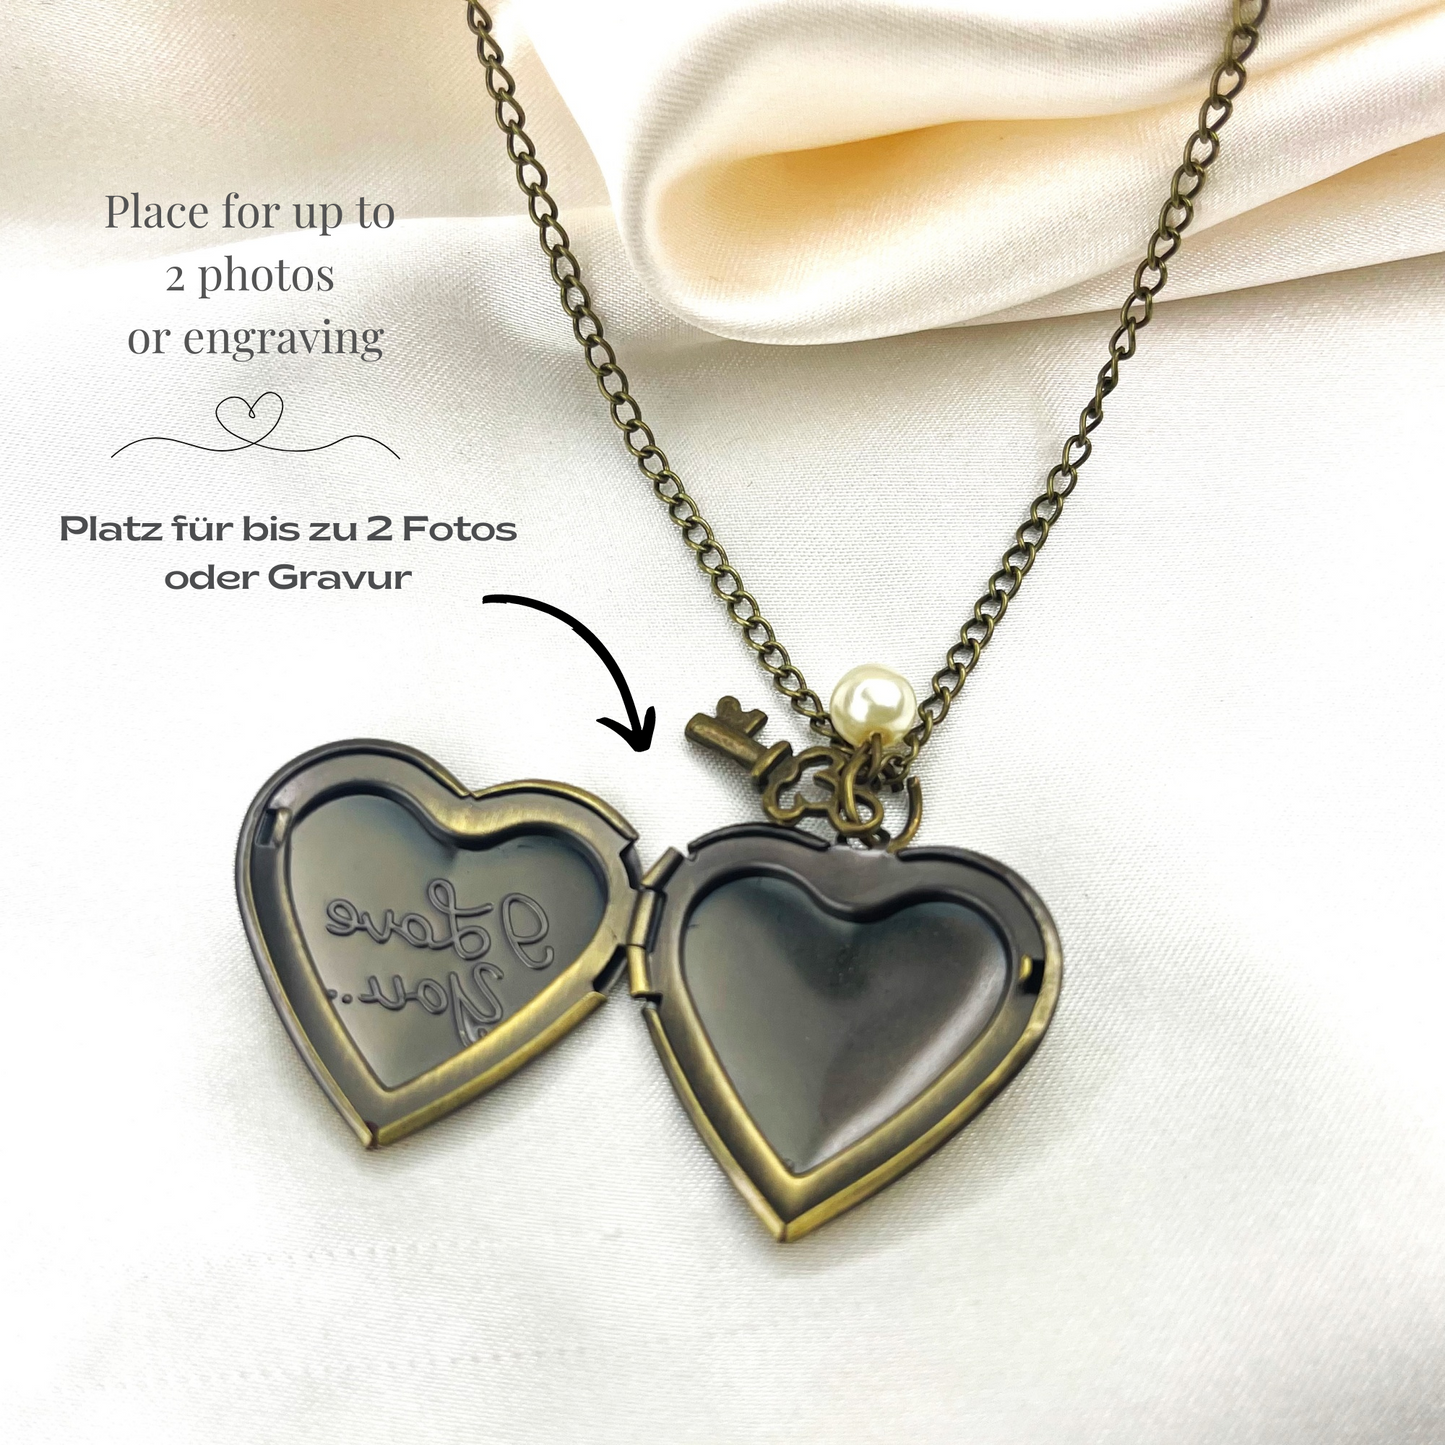 Custom Heart Fotomed Lacilities Key Pendant - Proper Image Customizable - VIK-100